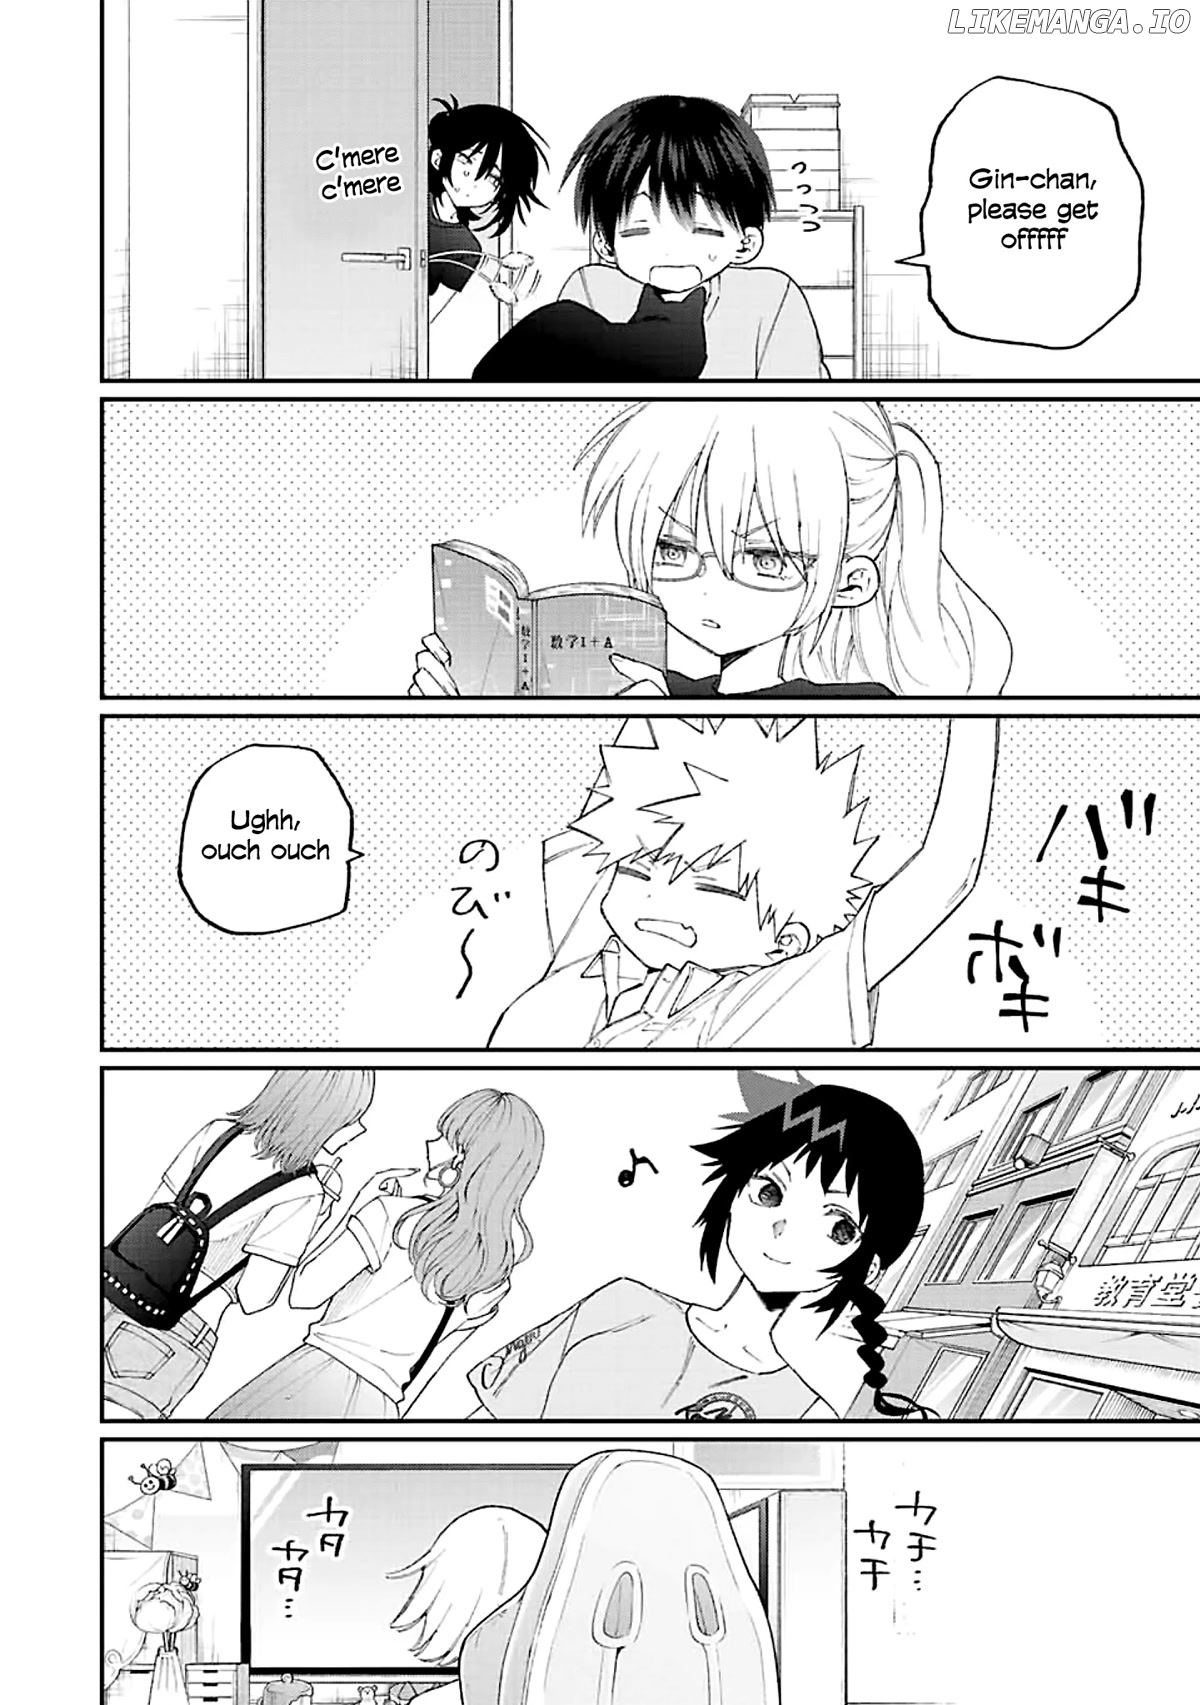 Shikimori's Not Just A Cutie chapter 158 - page 5